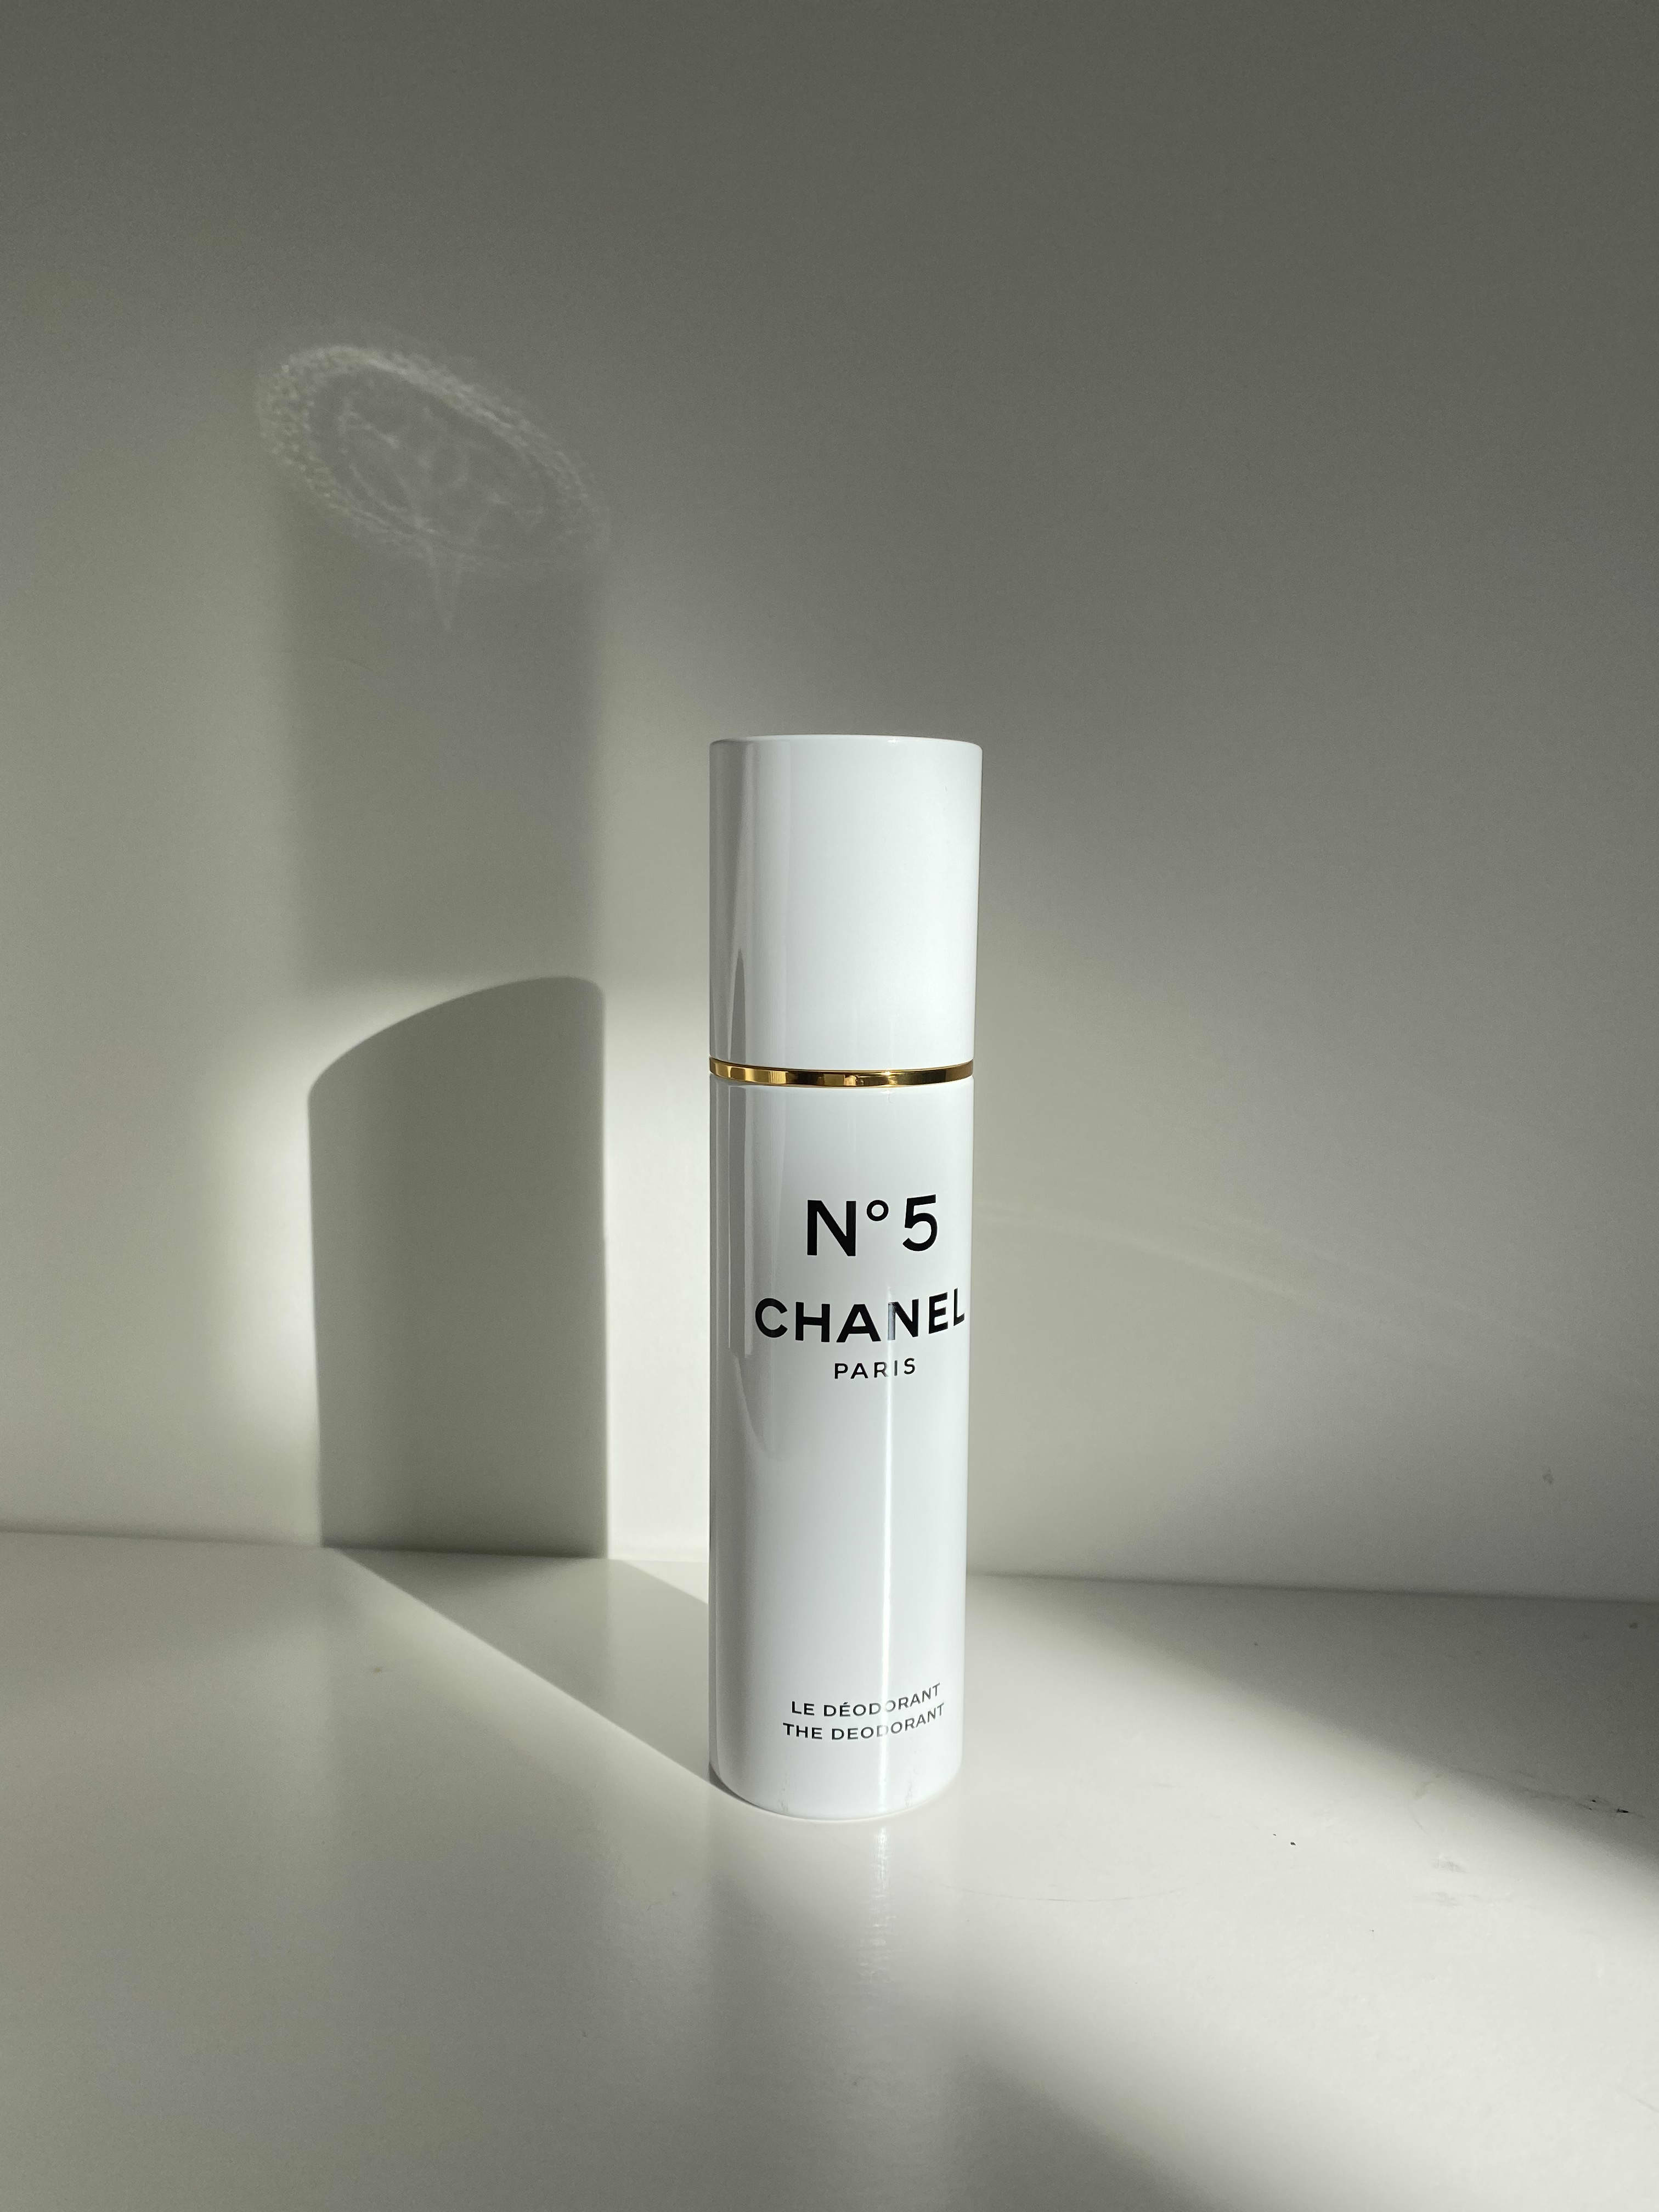 Chanel N5 Deodorant